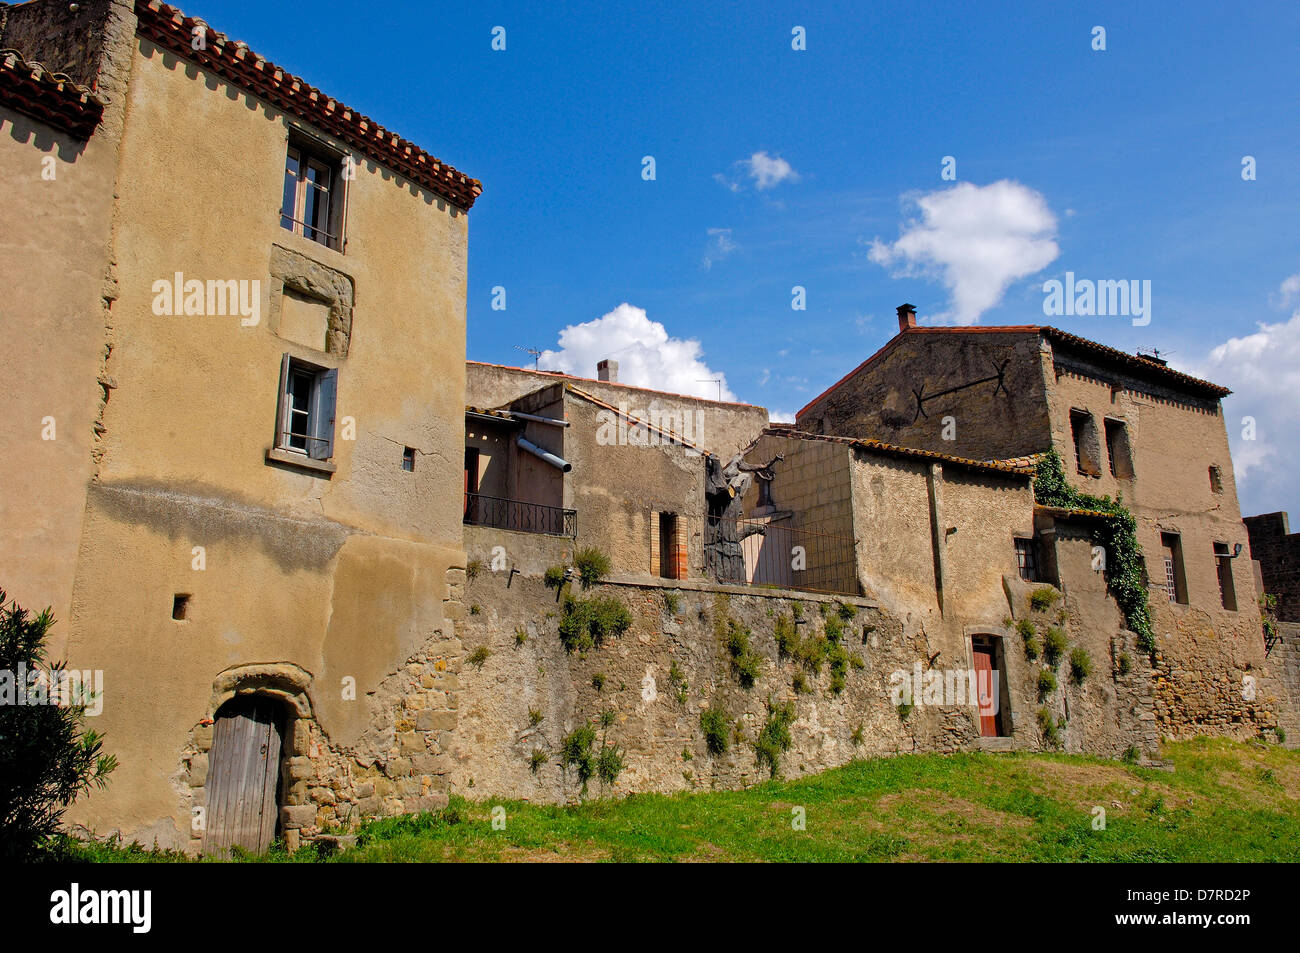 Ol Town, La Cité, Carcassonne medieval fortified town. Aude, Languedoc-Roussillon, France Stock Photo